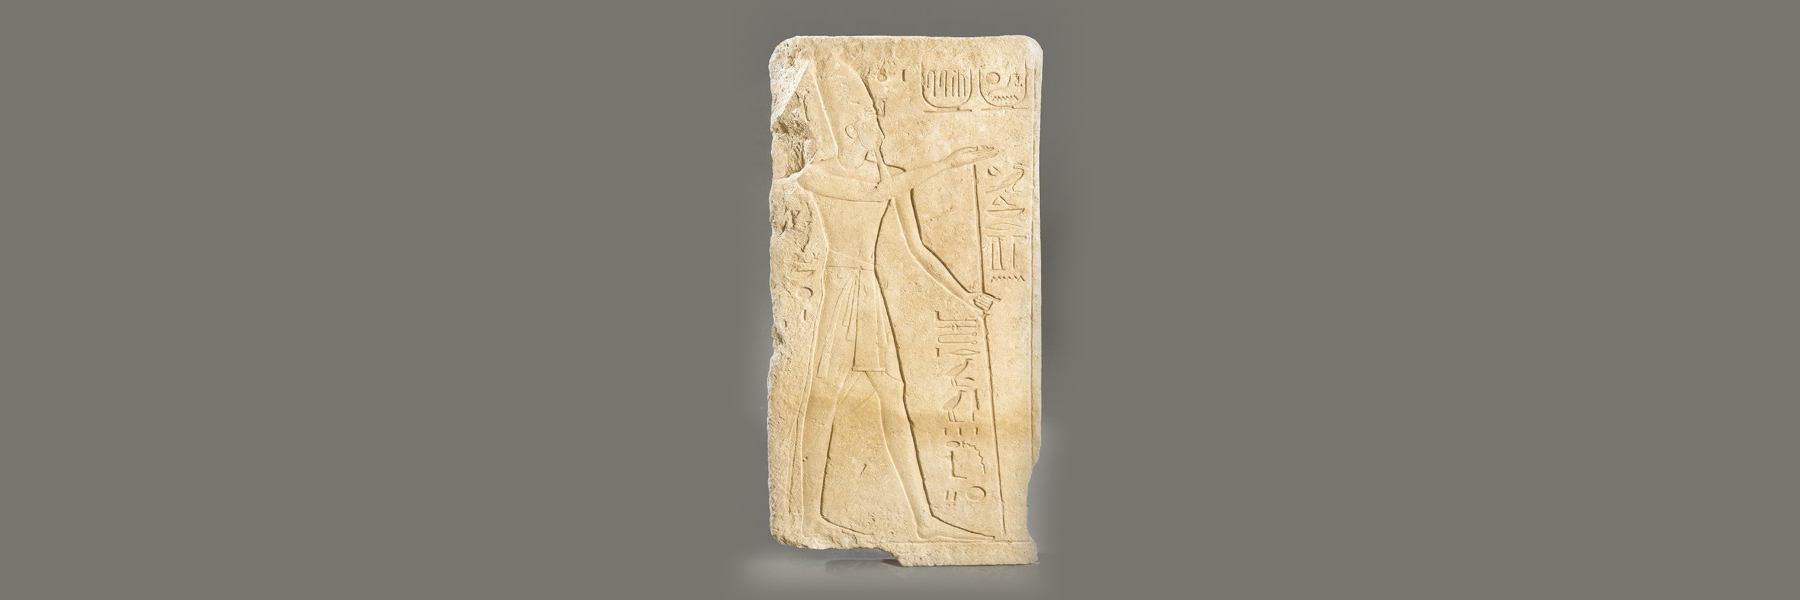 70.000 euros alcanza una estela en Piedra de Ramses II en Segre